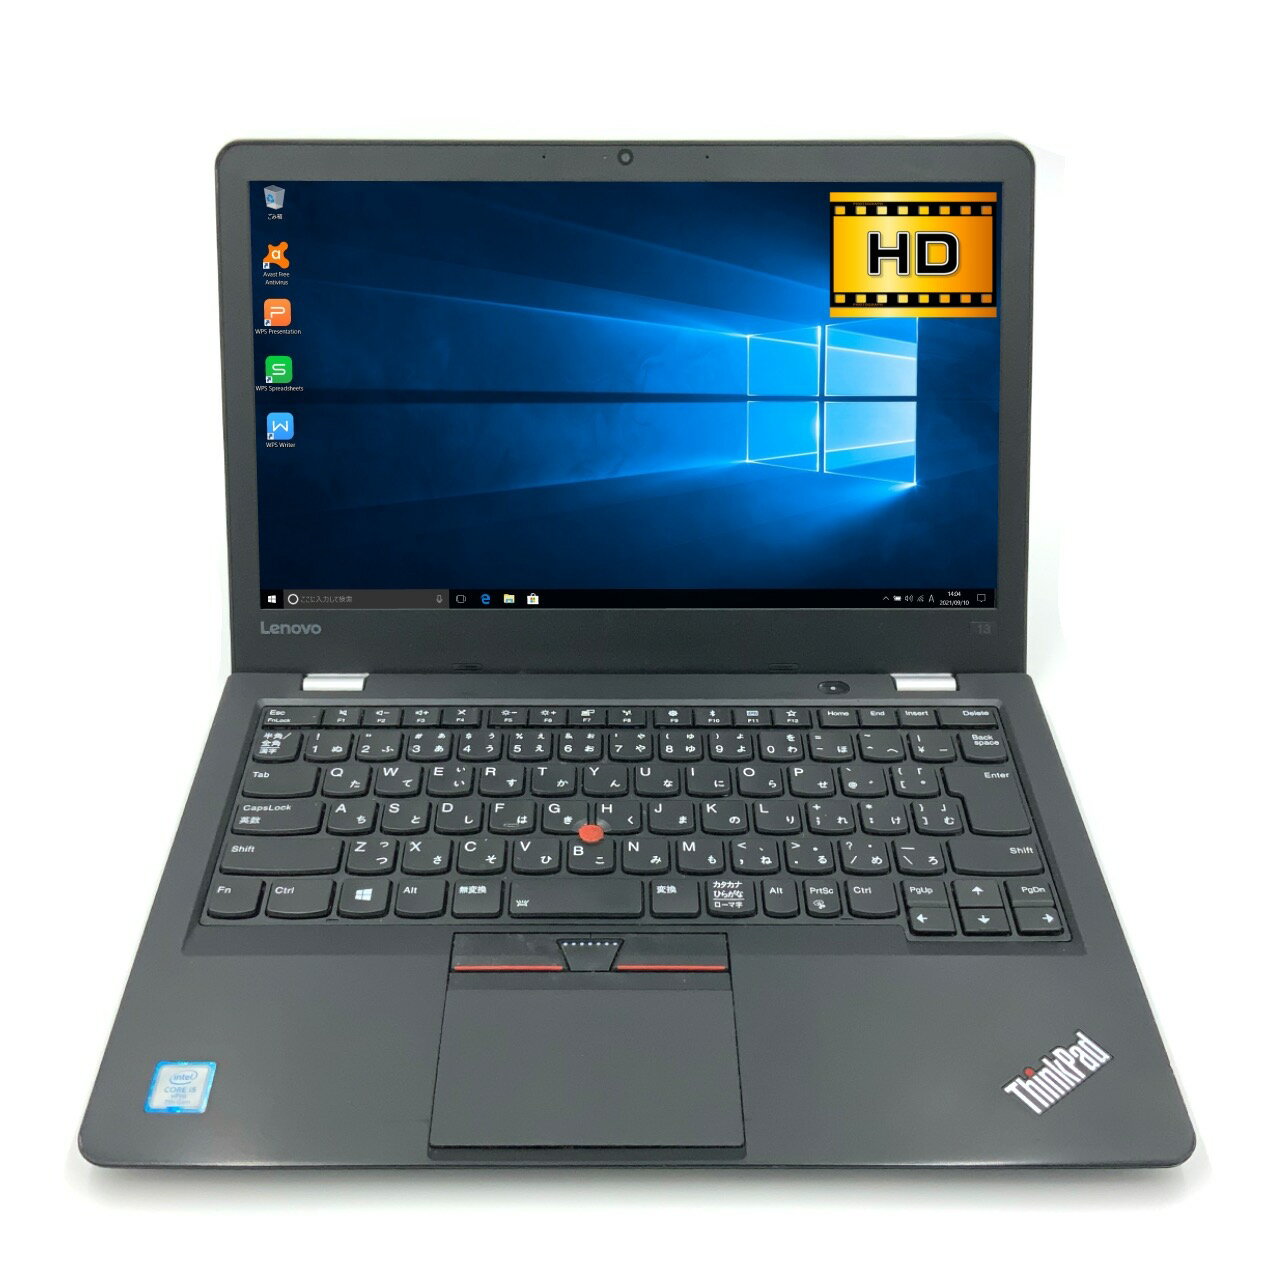 【定番】【モバイル】 Lenovo ThinkPad 13 第7世代 Core i5 7300U/2.60GHz 4GB 新品SSD480GB M.2 Windows10 64bit WPSOffice 13.3インチ HD カメラ 無線LAN 中古パソコン ノートパソコン モバイルノート PC Notebook 【中古】